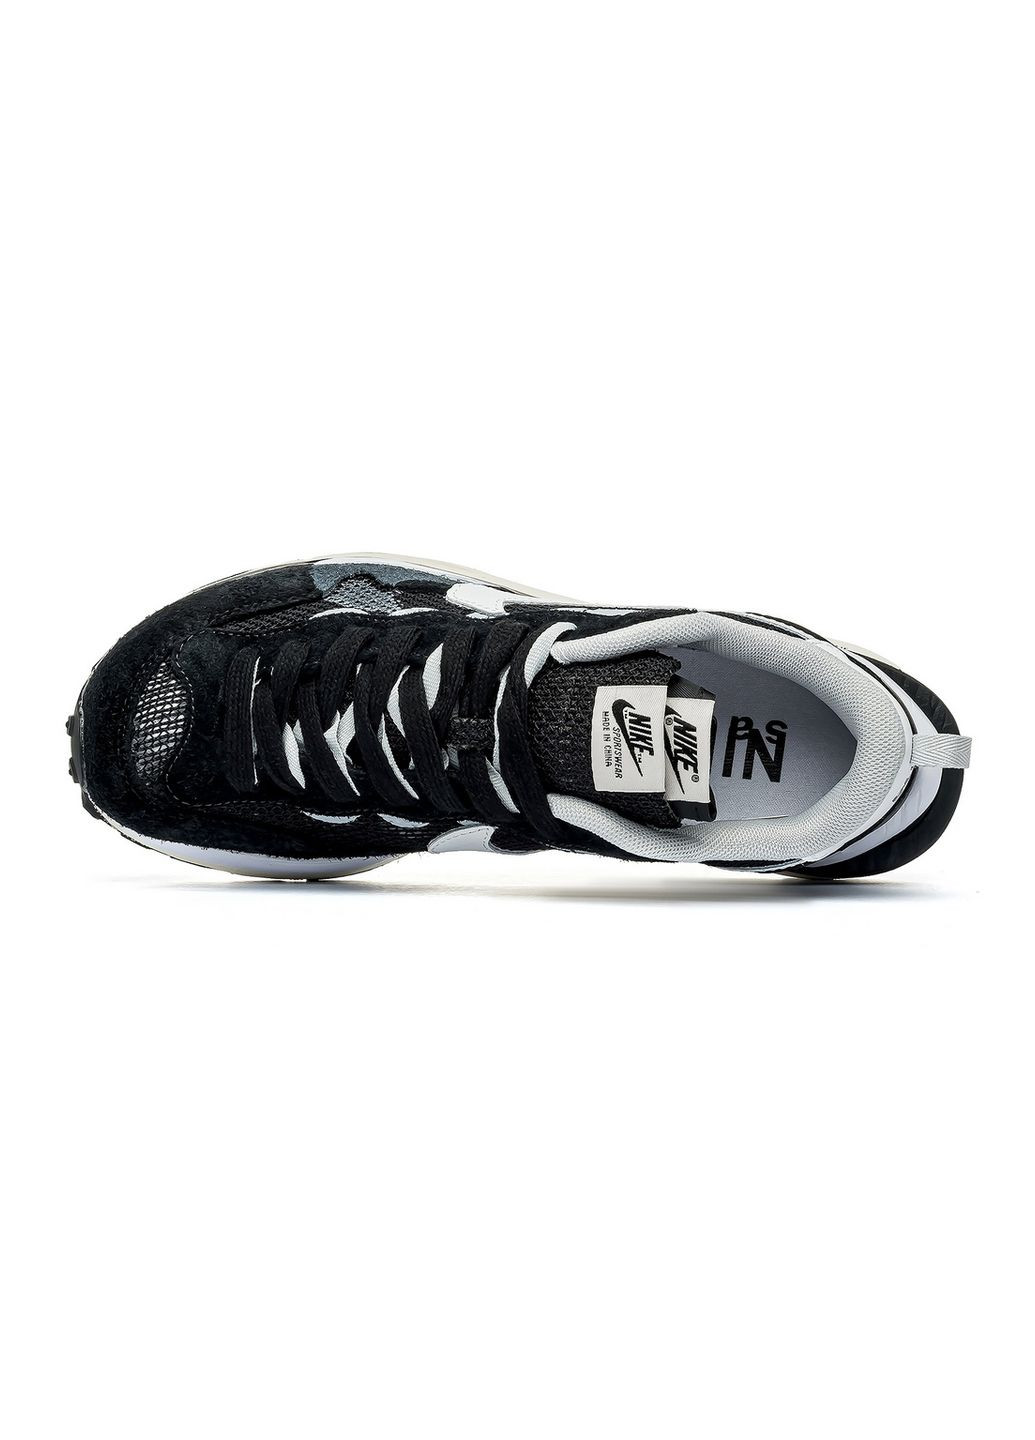 Цветные демисезонные кроссовки мужские black white, вьетнам Nike Vaporwaffle Sacai